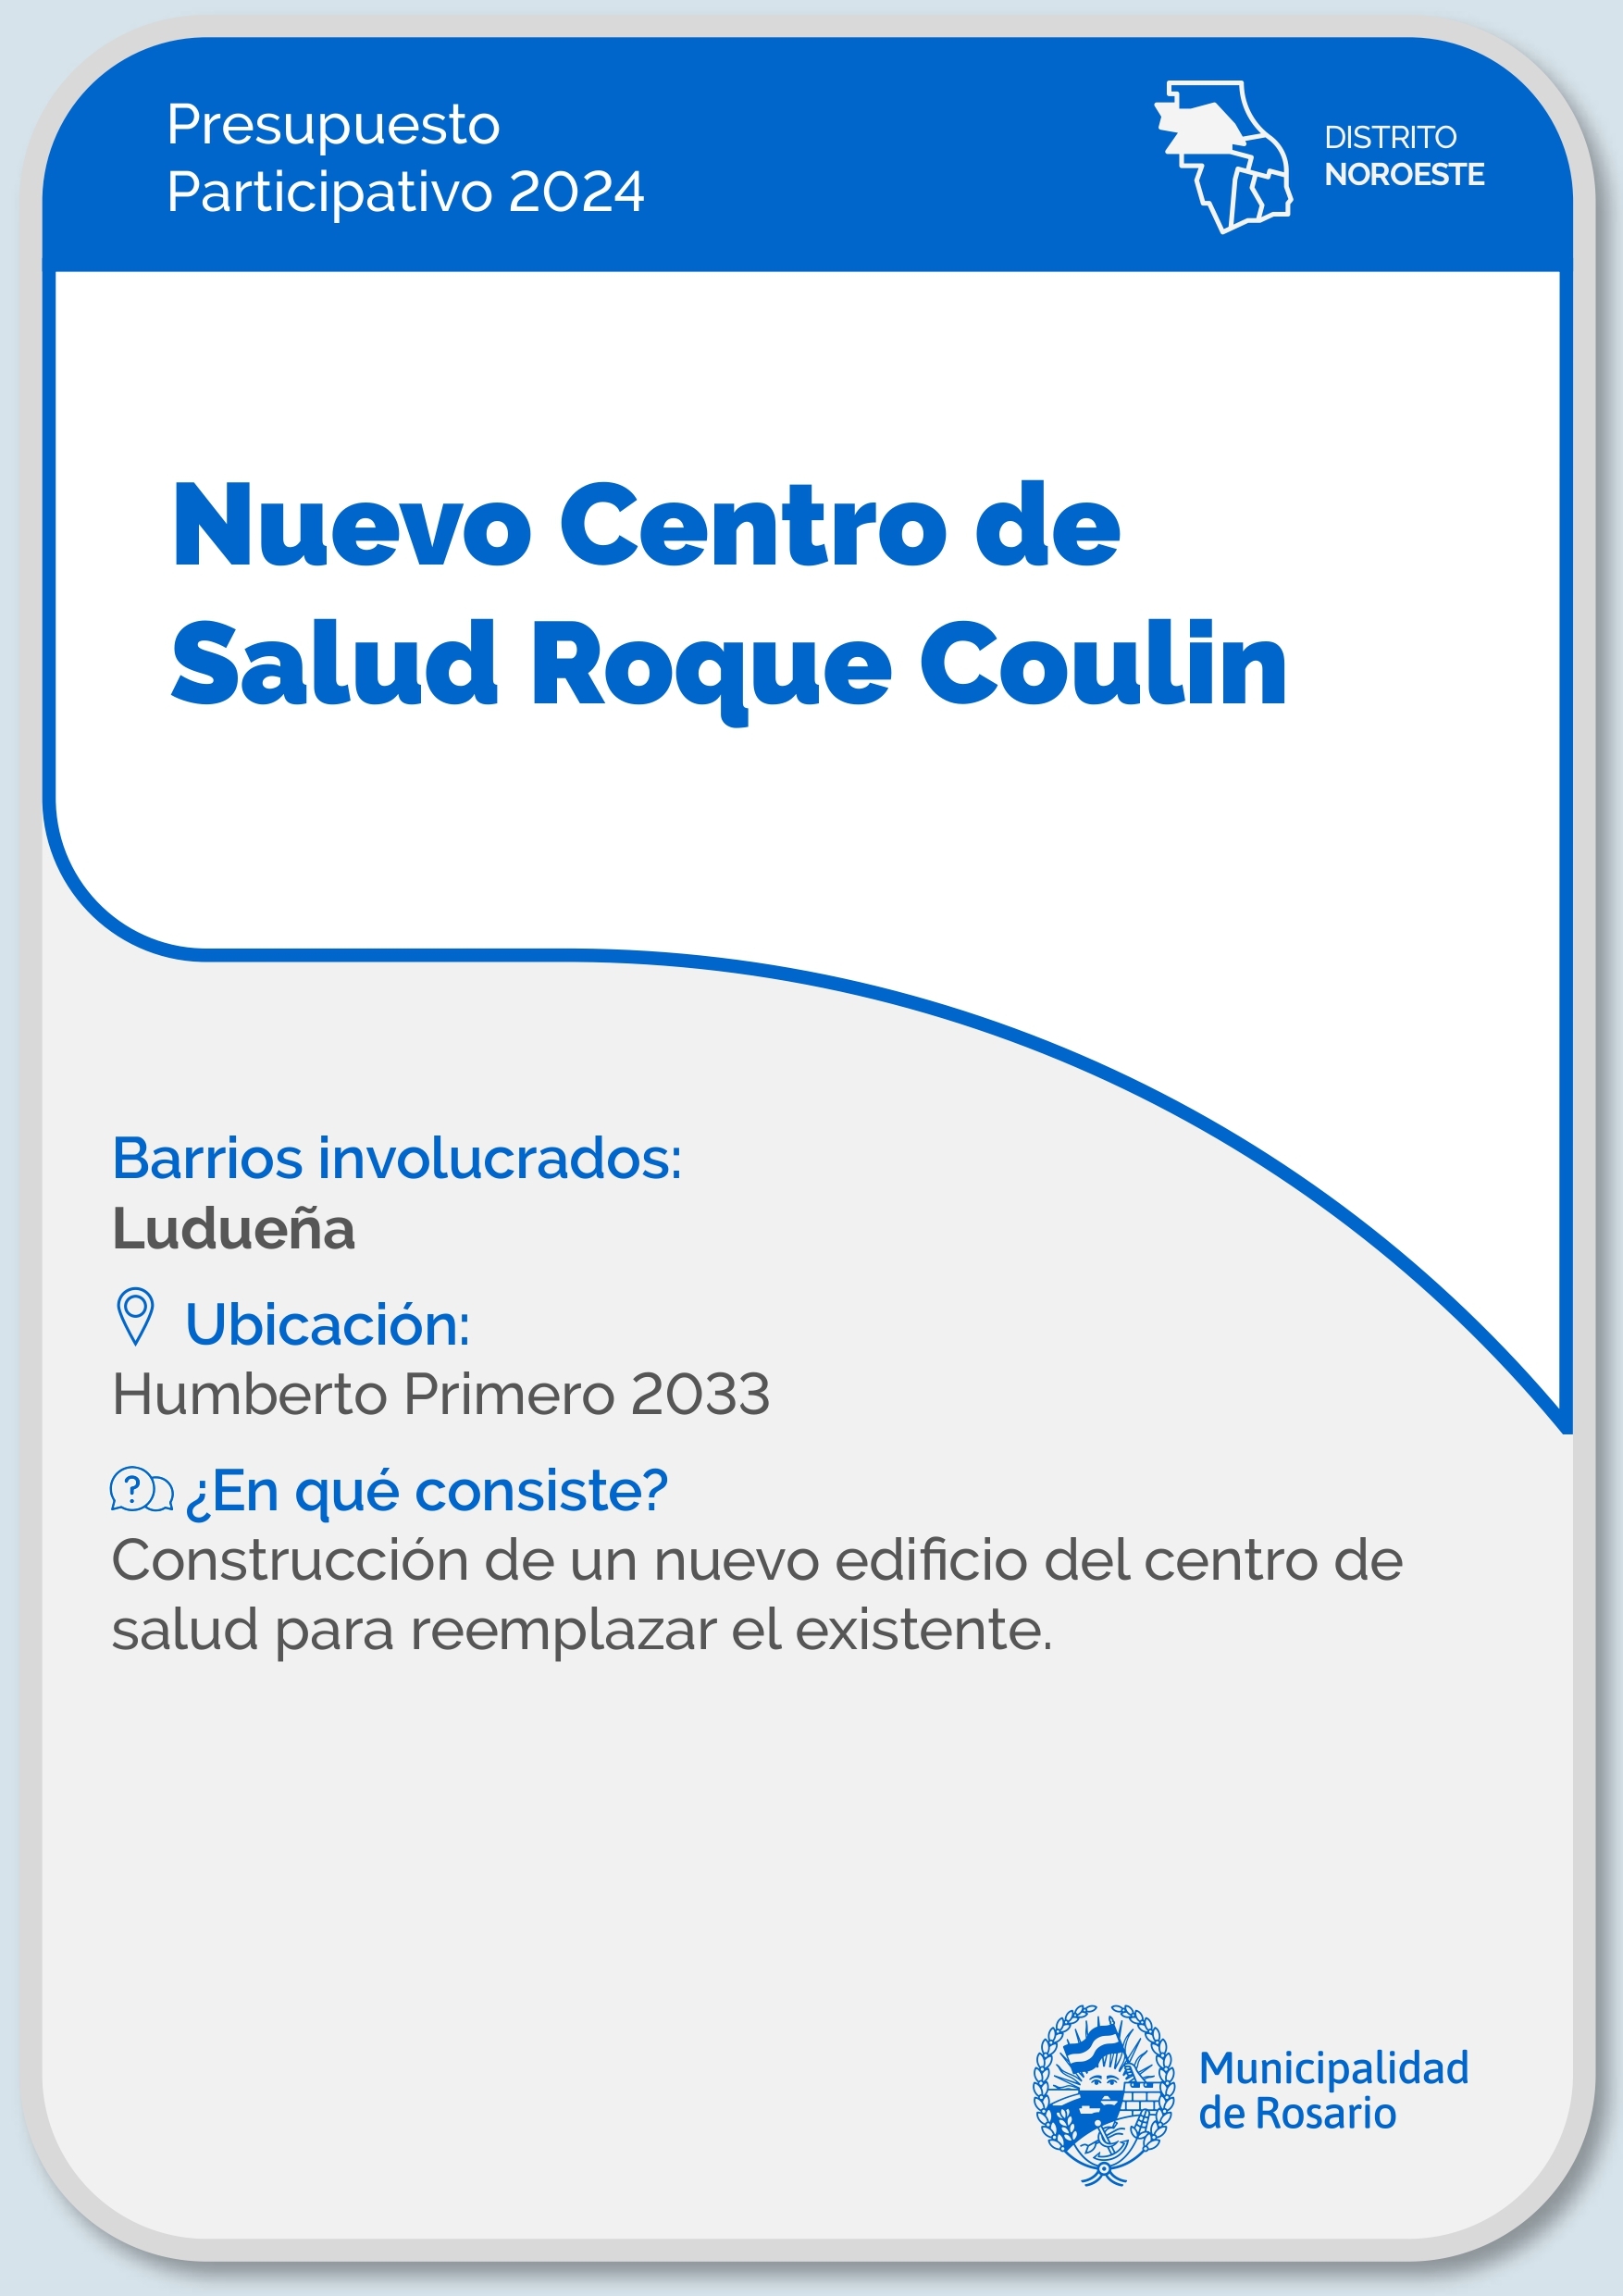 Nuevo Centro de Salud Roque Coulin - Distrito Noroeste